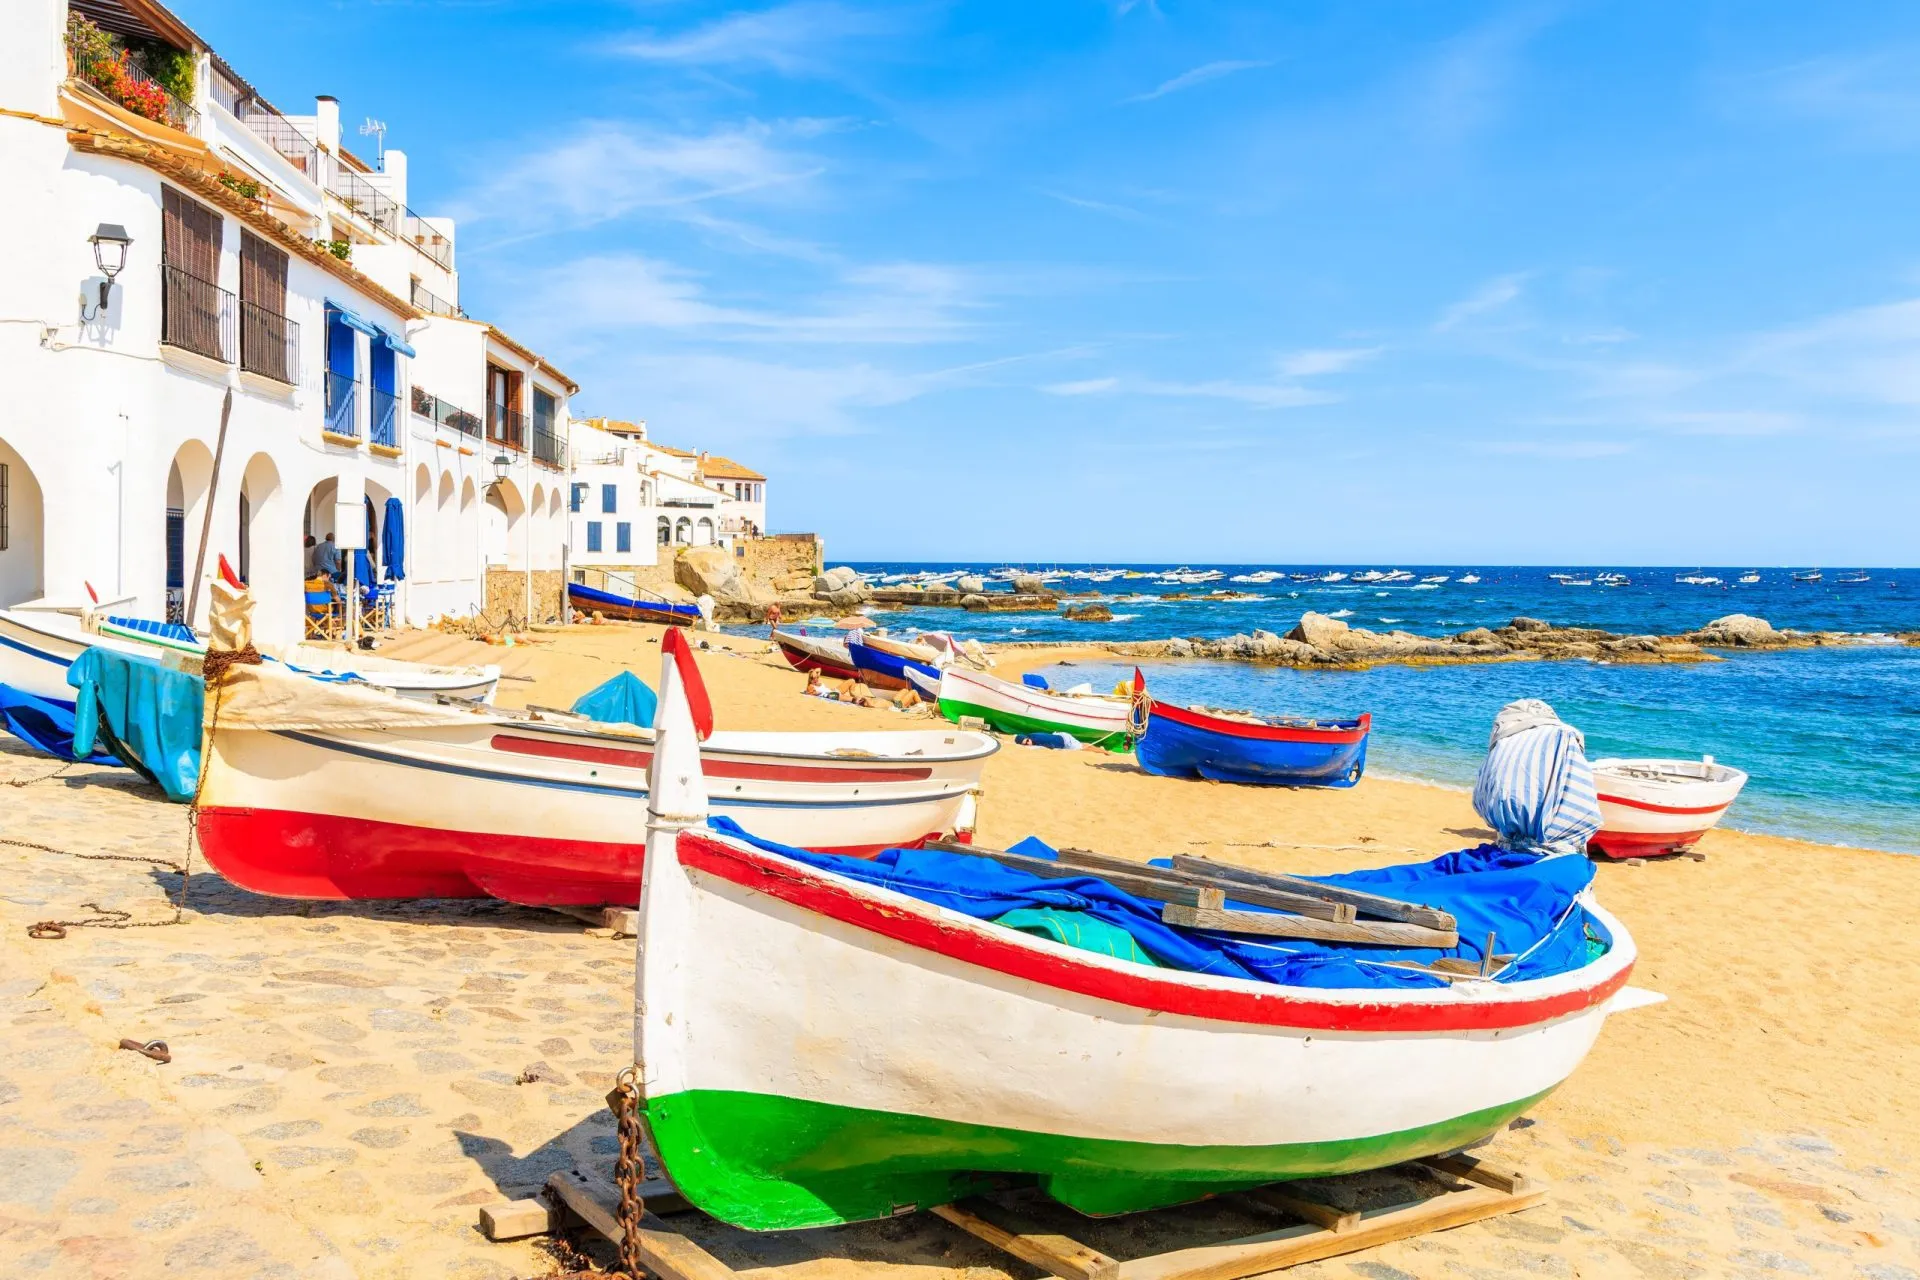 Traditionella fiskebåtar på stranden i Calella de Palafrugell, naturskön by med vita hus och sandstrand med klarblått vatten, Costa Brava, Katalonien, Spanien